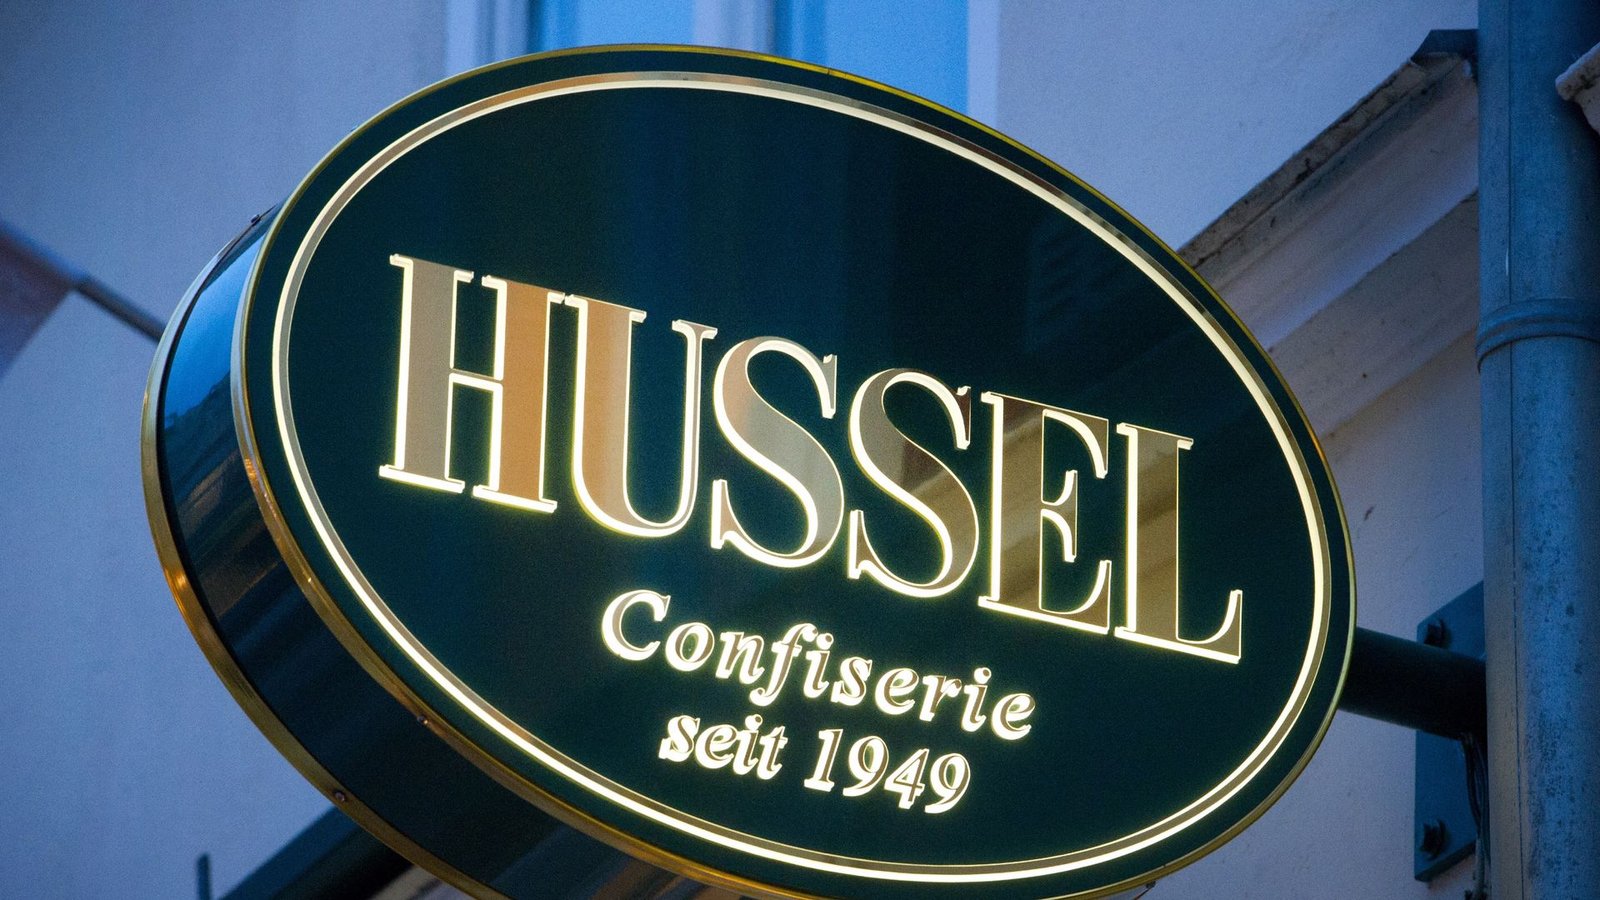 Das Logo der Confiserie "Hussel".Foto: Stefan Sauer/dpa-Zentralbild/dpa